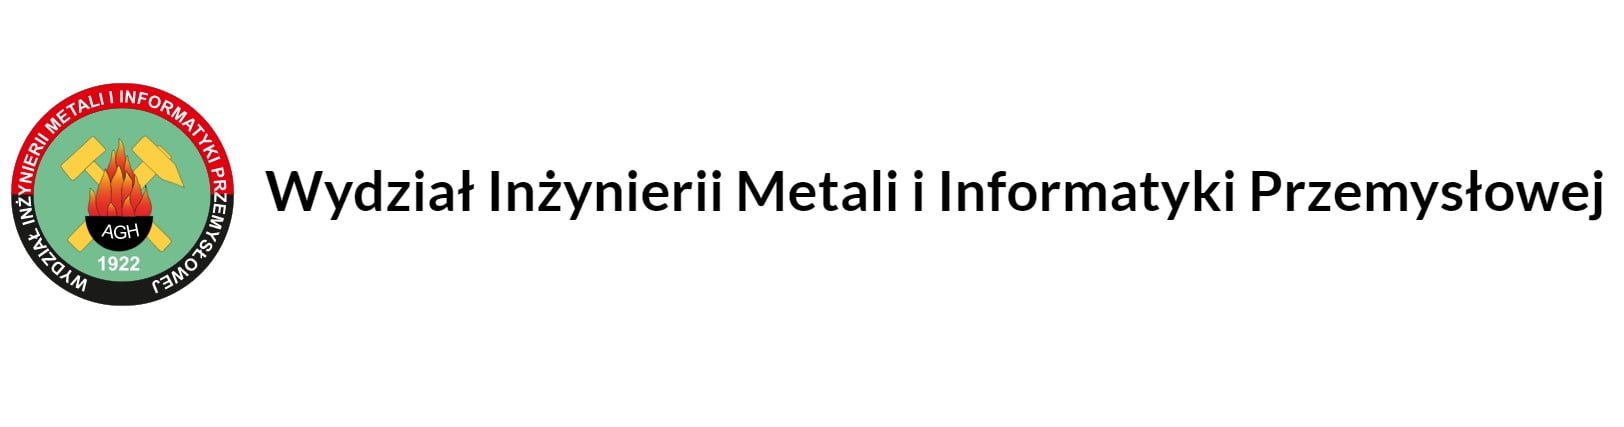 inz-metali-agh-5.jpg